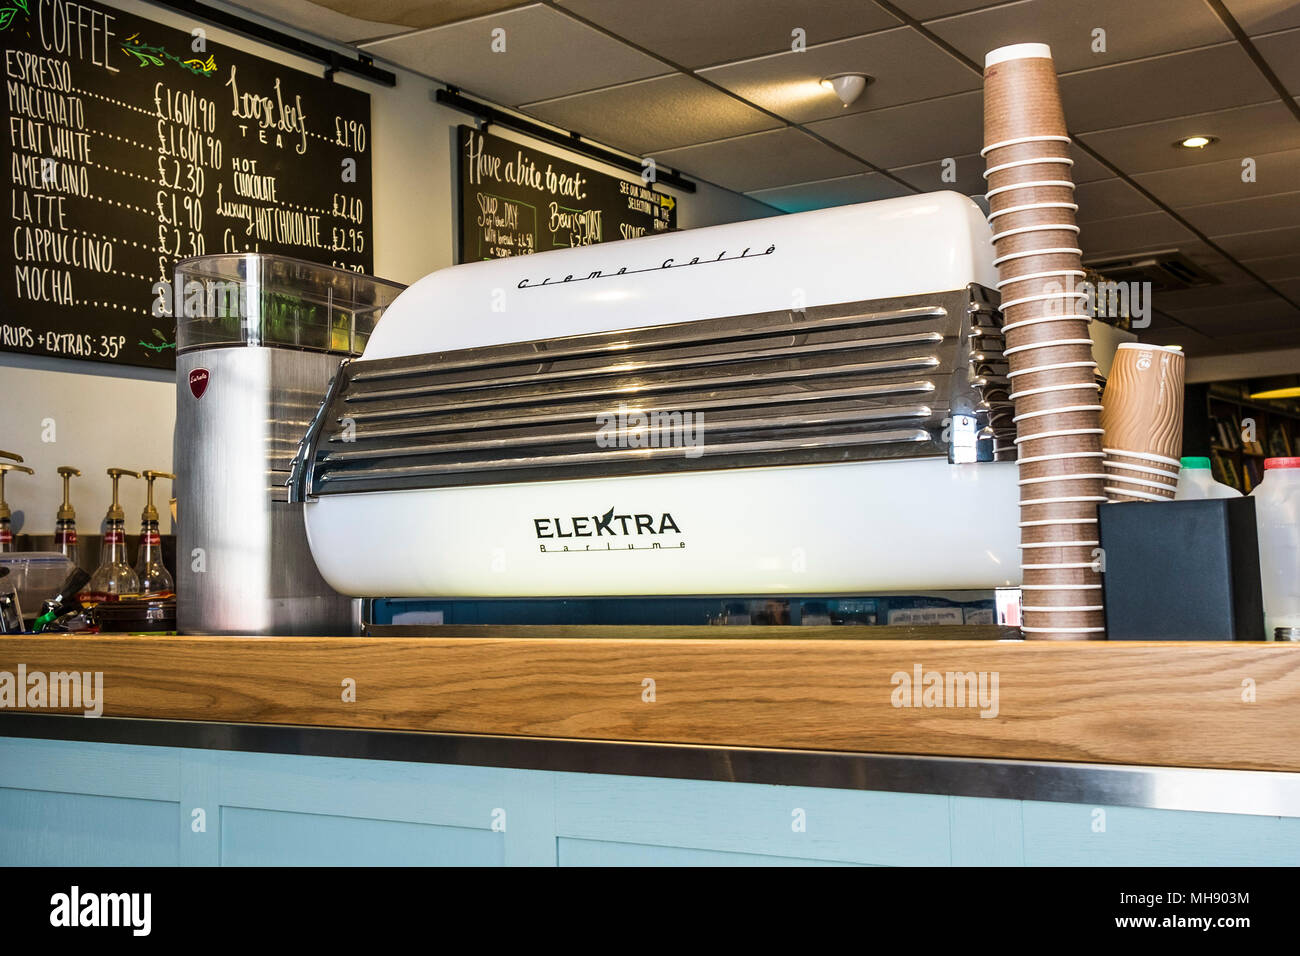 Un Creme Caffe Barlume Elektra máquina de café en una cafetería. Foto de stock